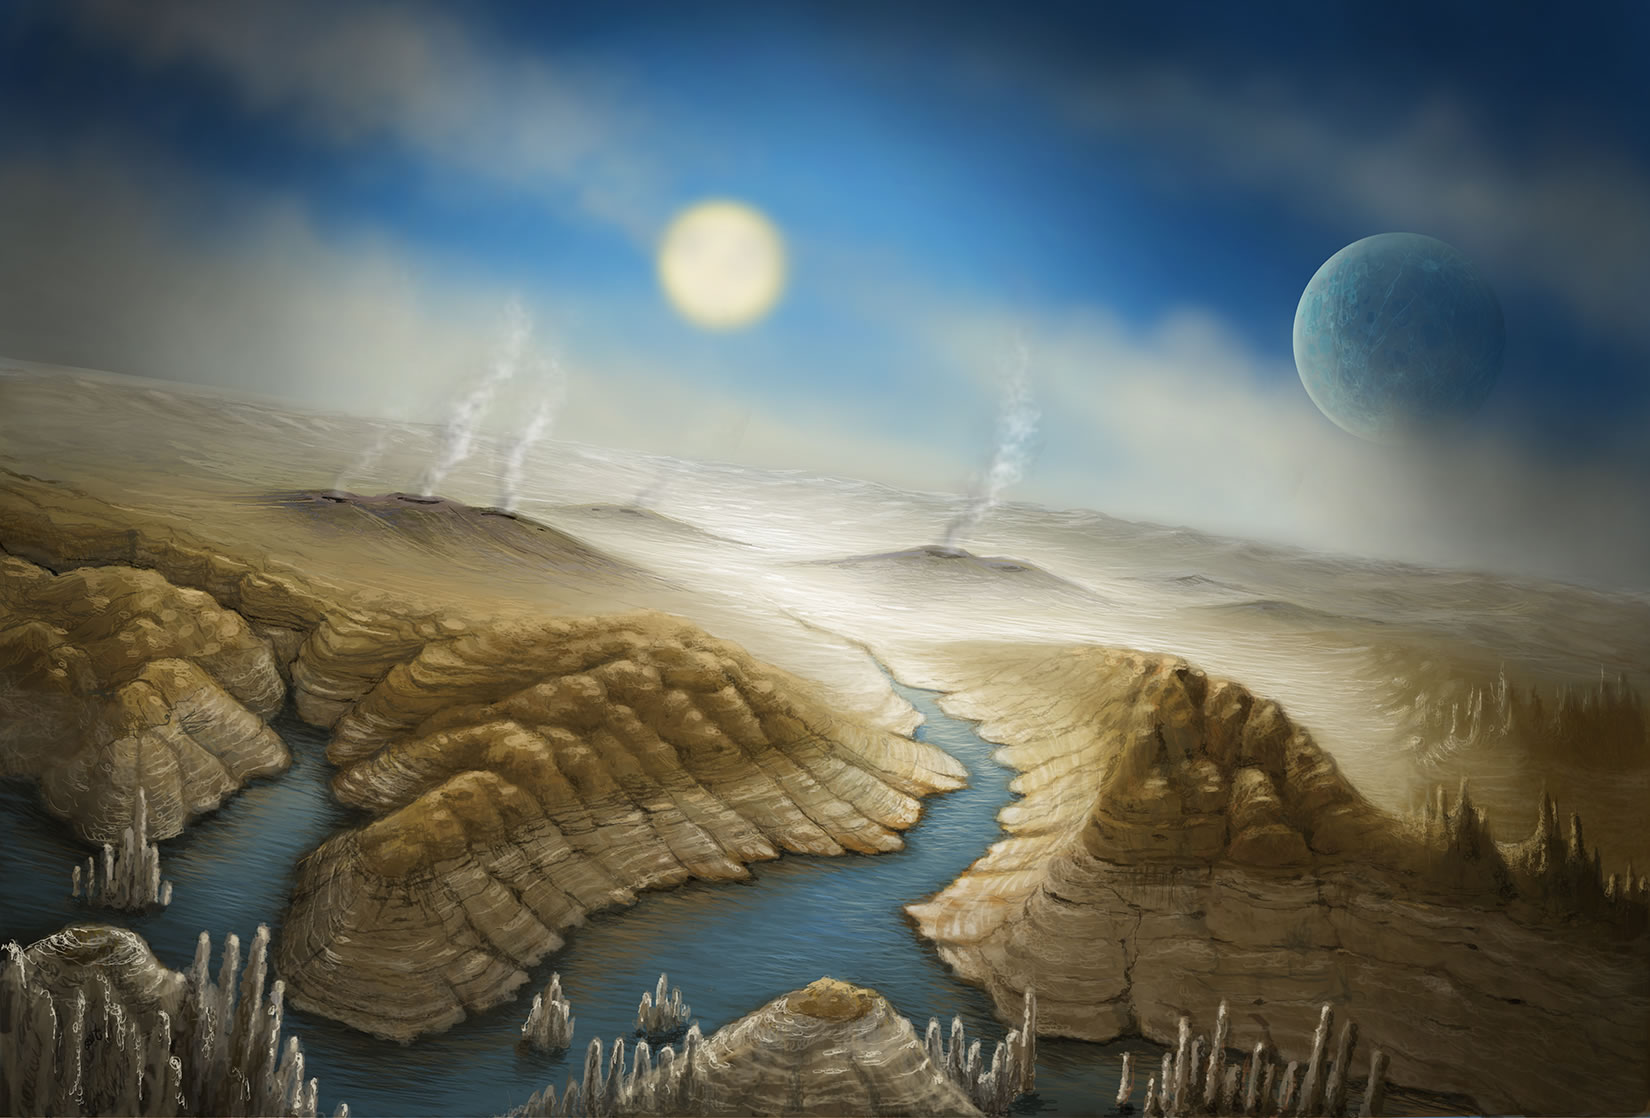 发现系外行星开普勒-452b:寻找地球兄弟到